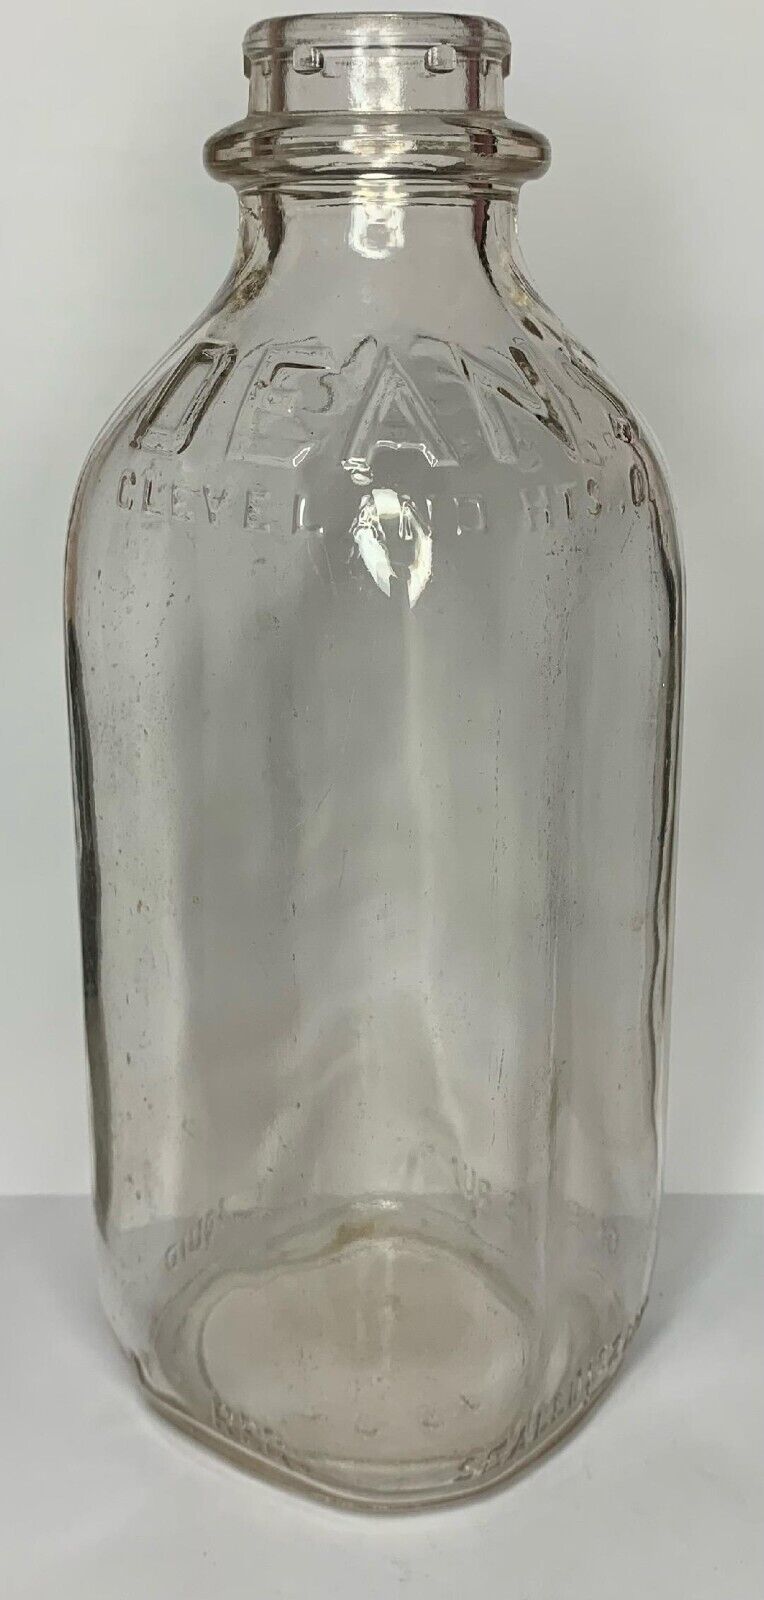 Vintage   DEAN'S DAIRY   CLEVELAND HEIGHTS  OHIO   ONE QUART  Glass Milk Bottle